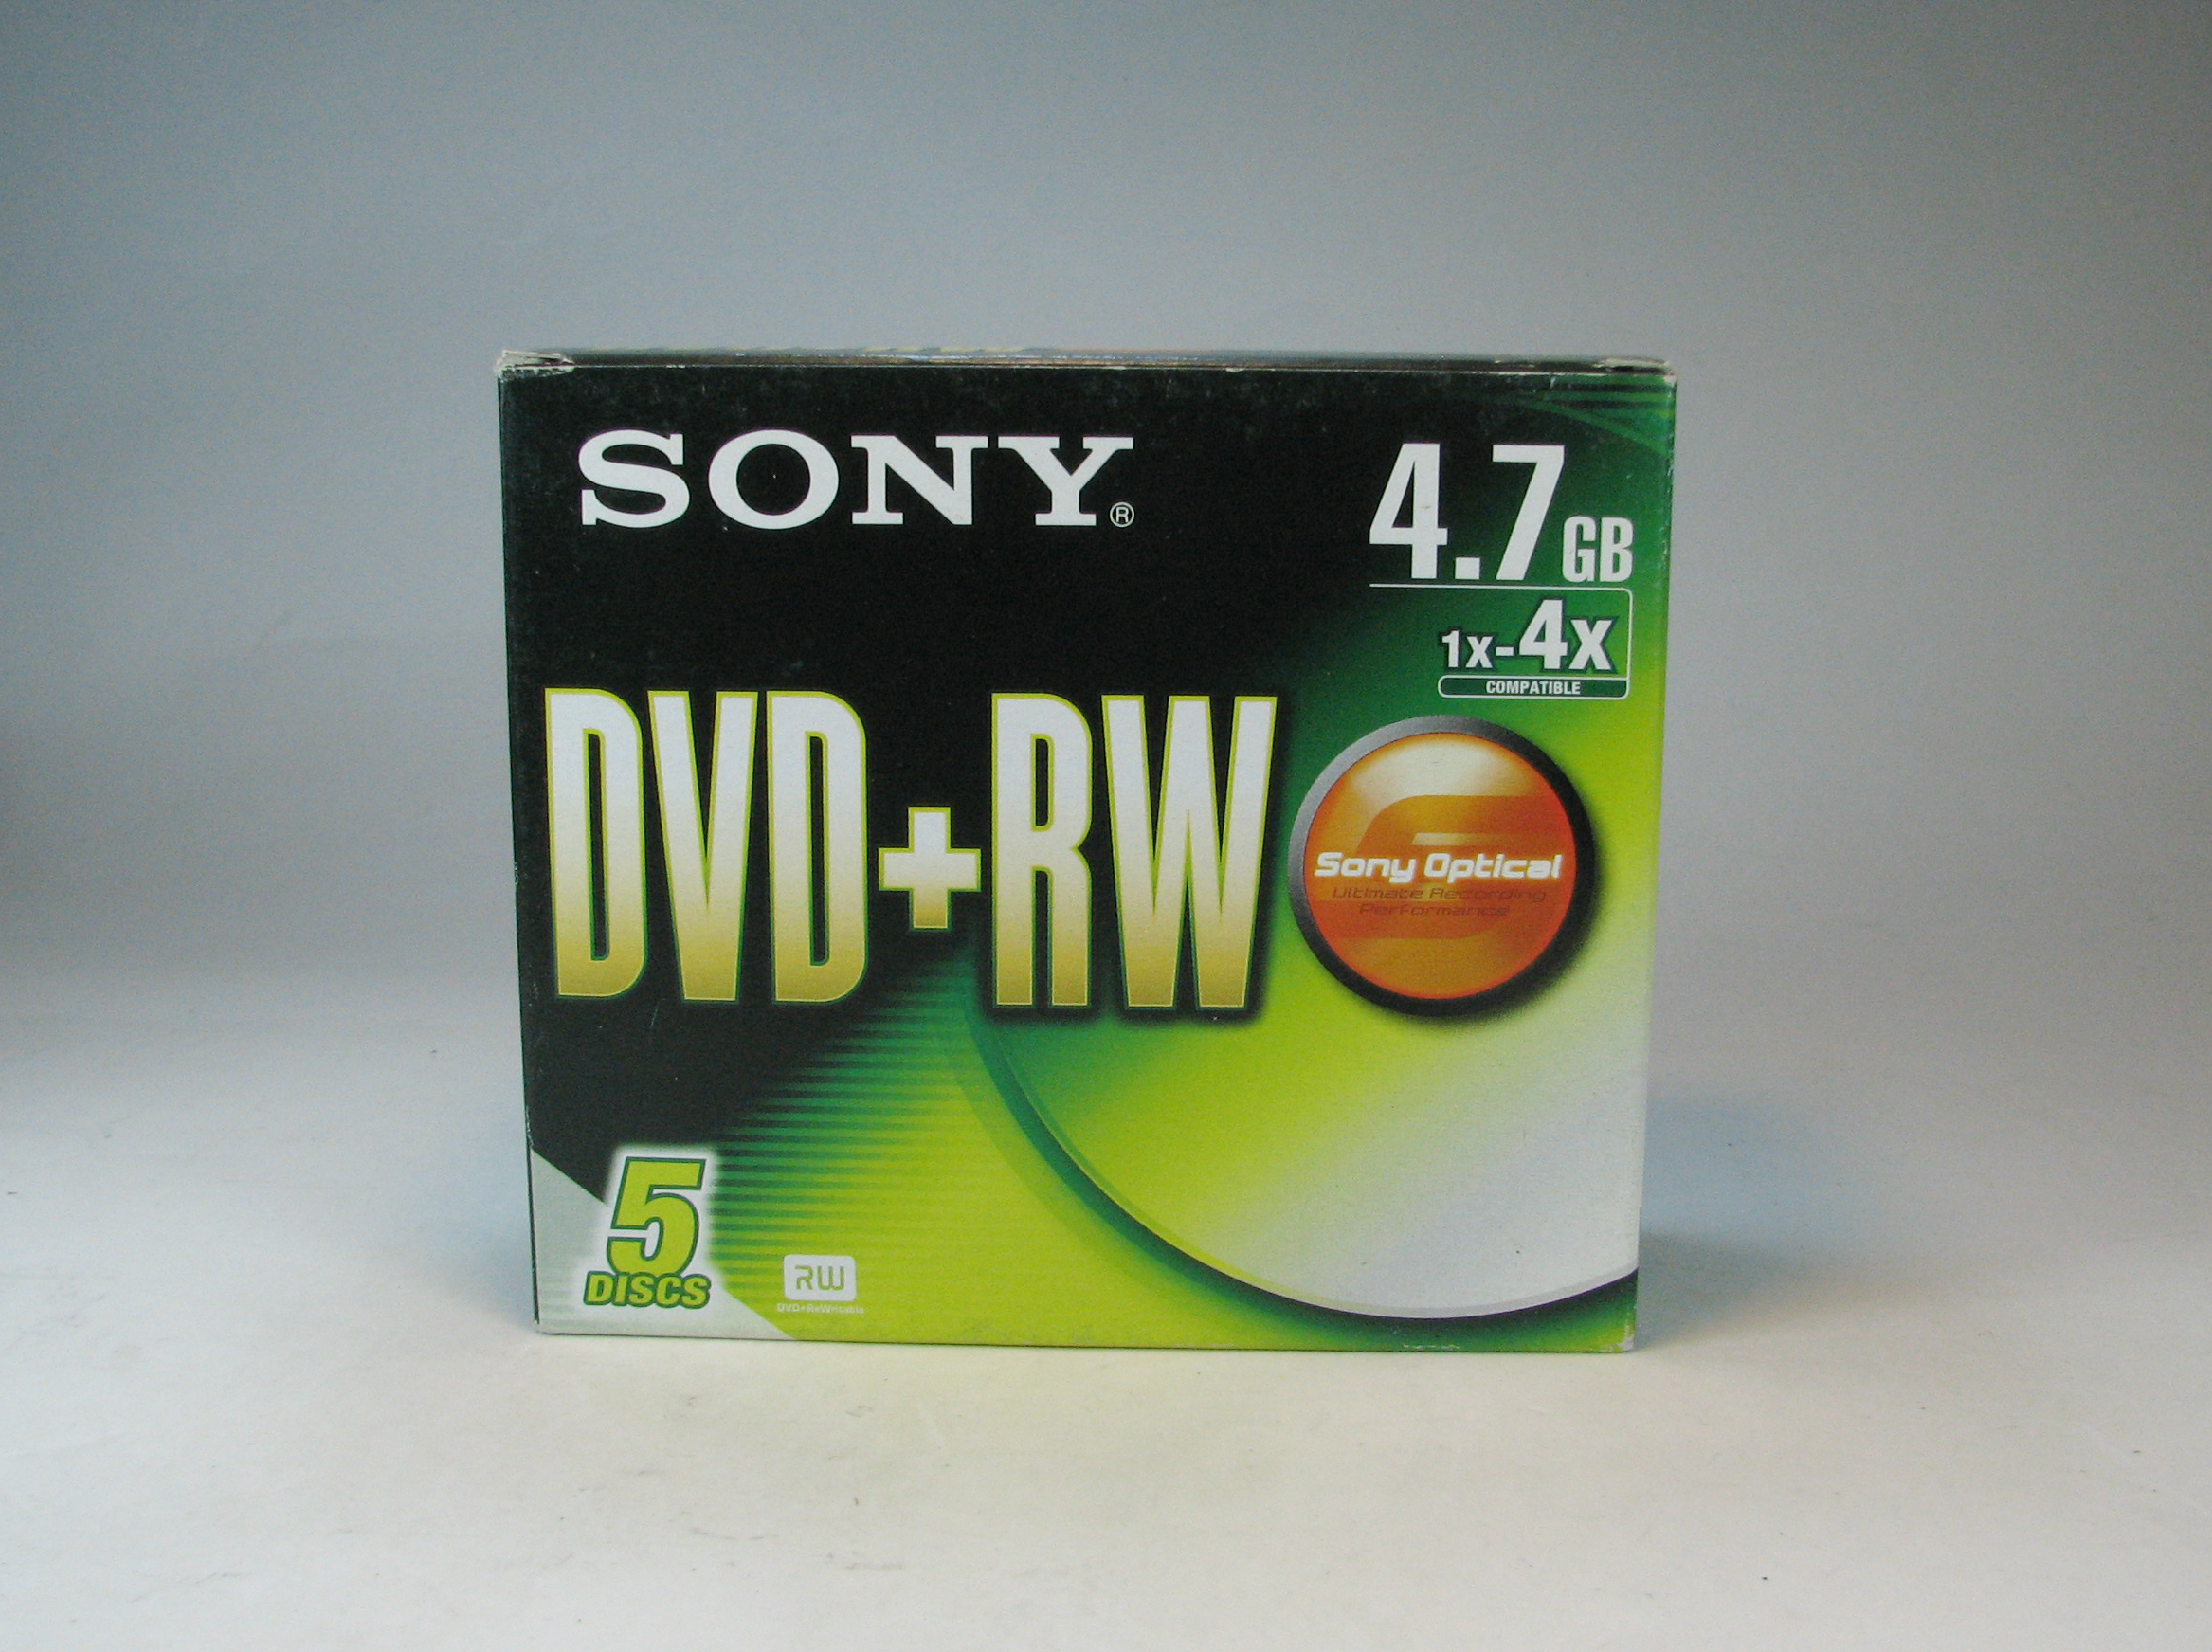 دی وی دی ریرایت سونی DVD-RW SONY